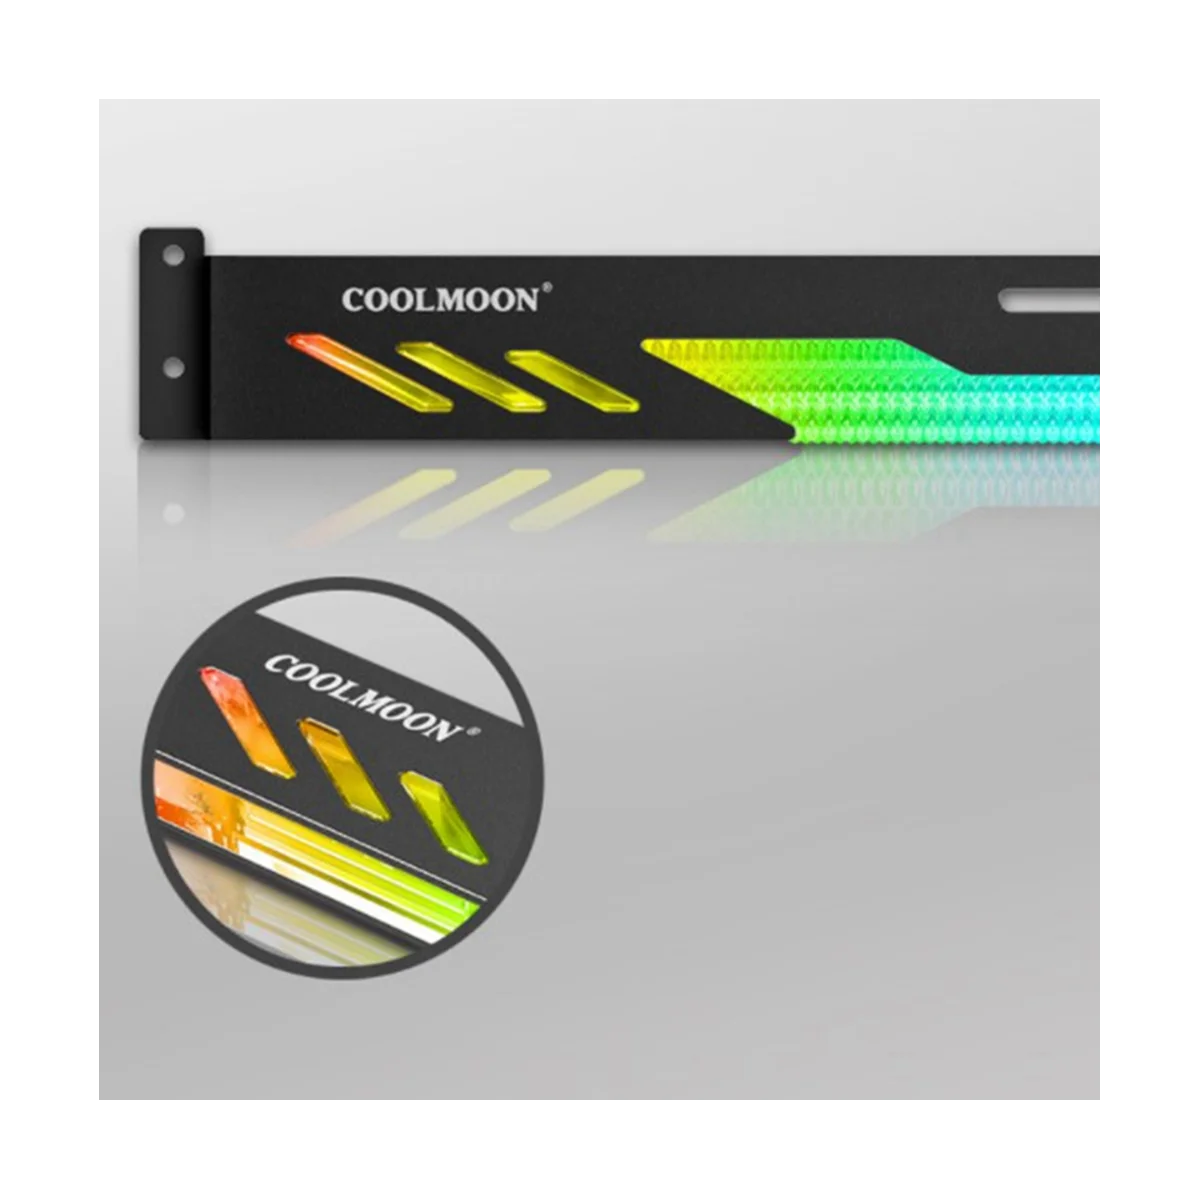 Вертикальный кронштейн для графического процессора COOLMOON GT8, красочный кронштейн 5V A-RGB, подставка для видеокарты для компьютерной графики, держатель графического процессора, белый 3